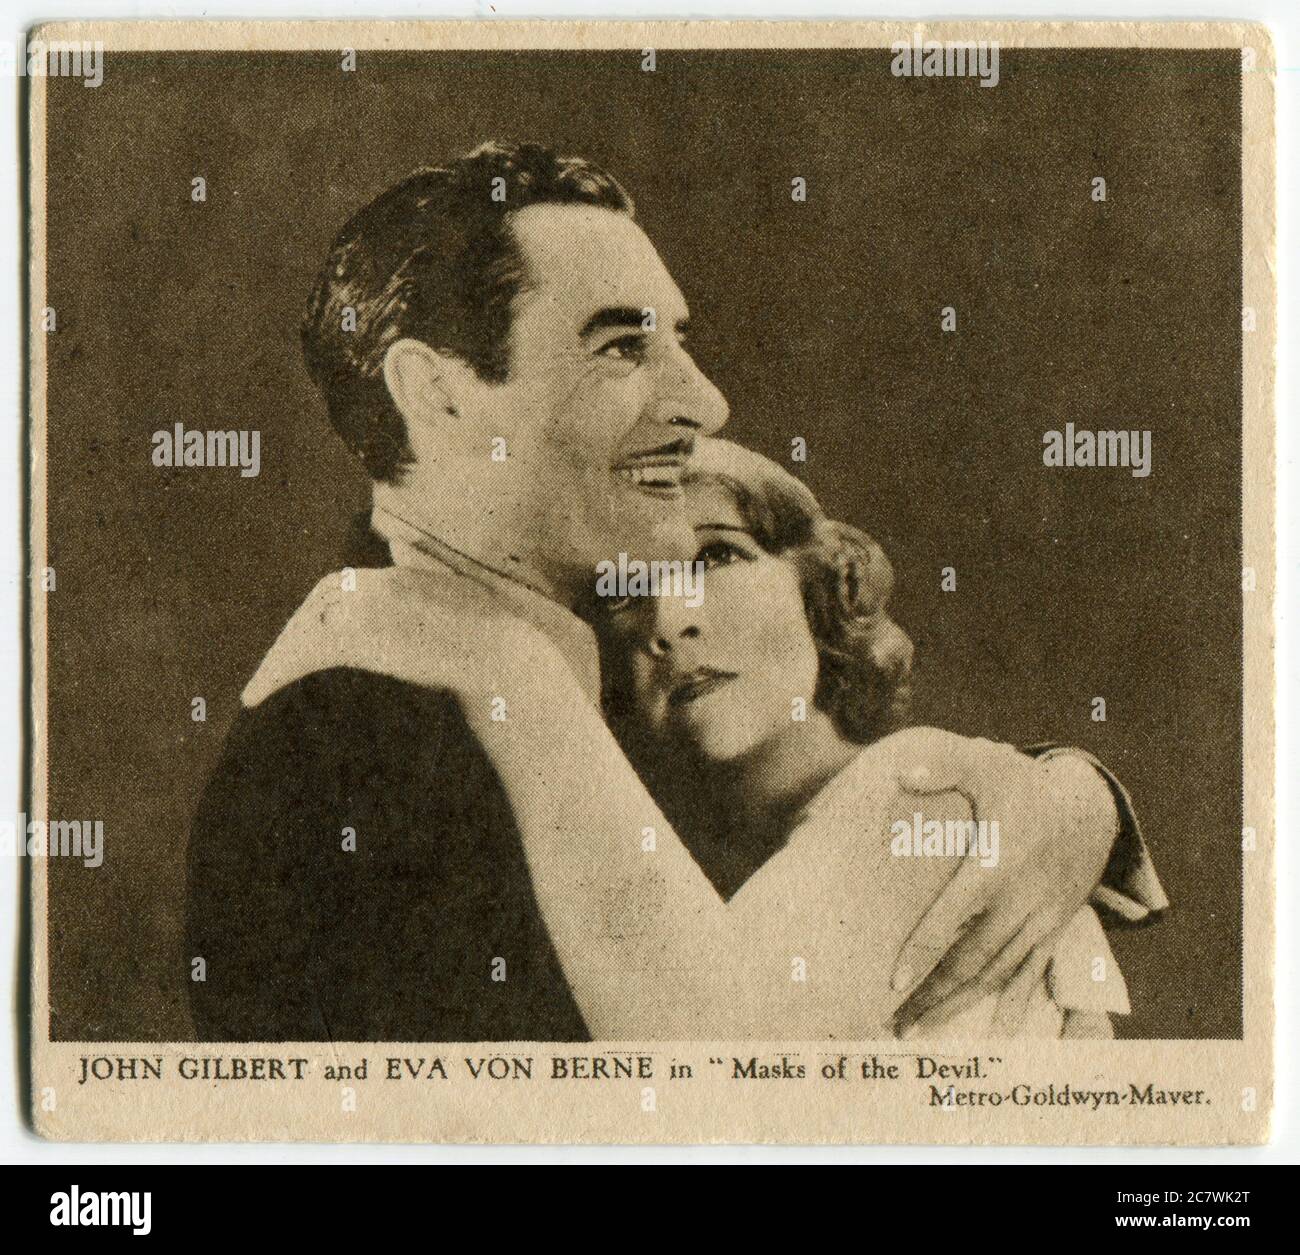 "Love Scenes from Famous films" carte à cigarettes Kensitas - John Gilbert et Eva Von Berne dans "masques du diable". Deuxième série publiée en 1932 par J. Wix & Sons Ltd Banque D'Images